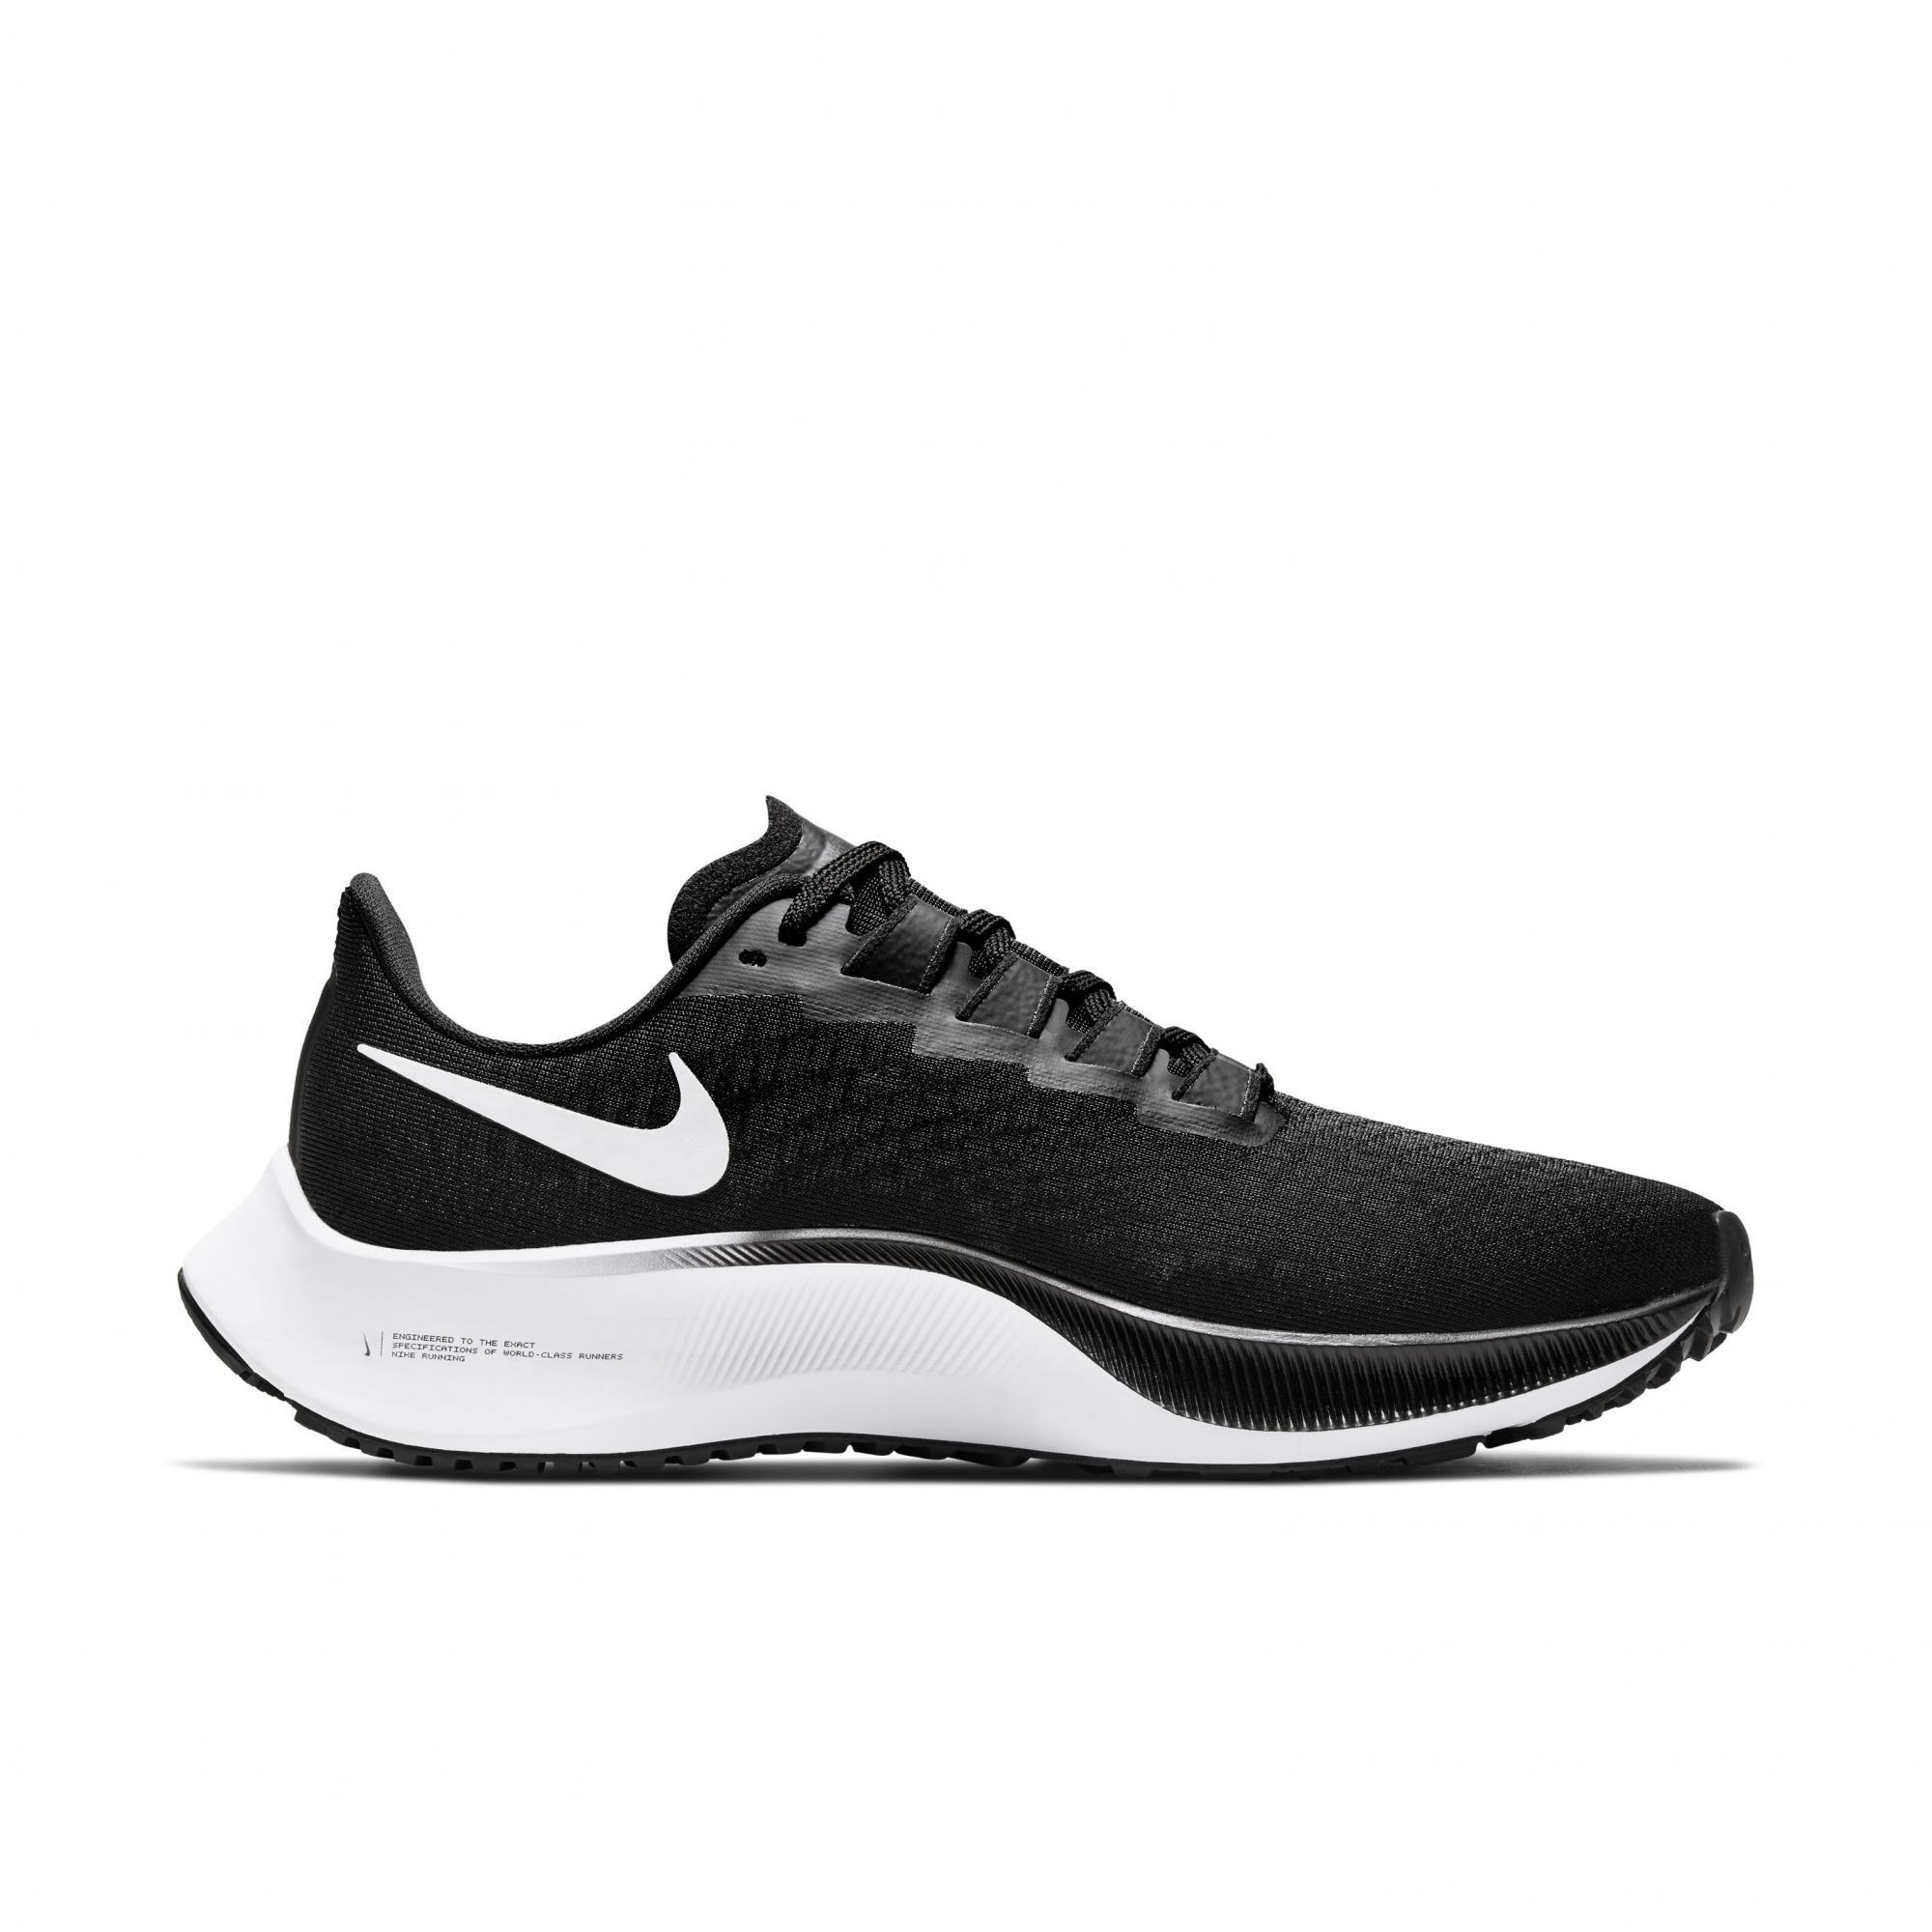 Zoom Pegasus 37 "Black/White" Women's Running Shoe